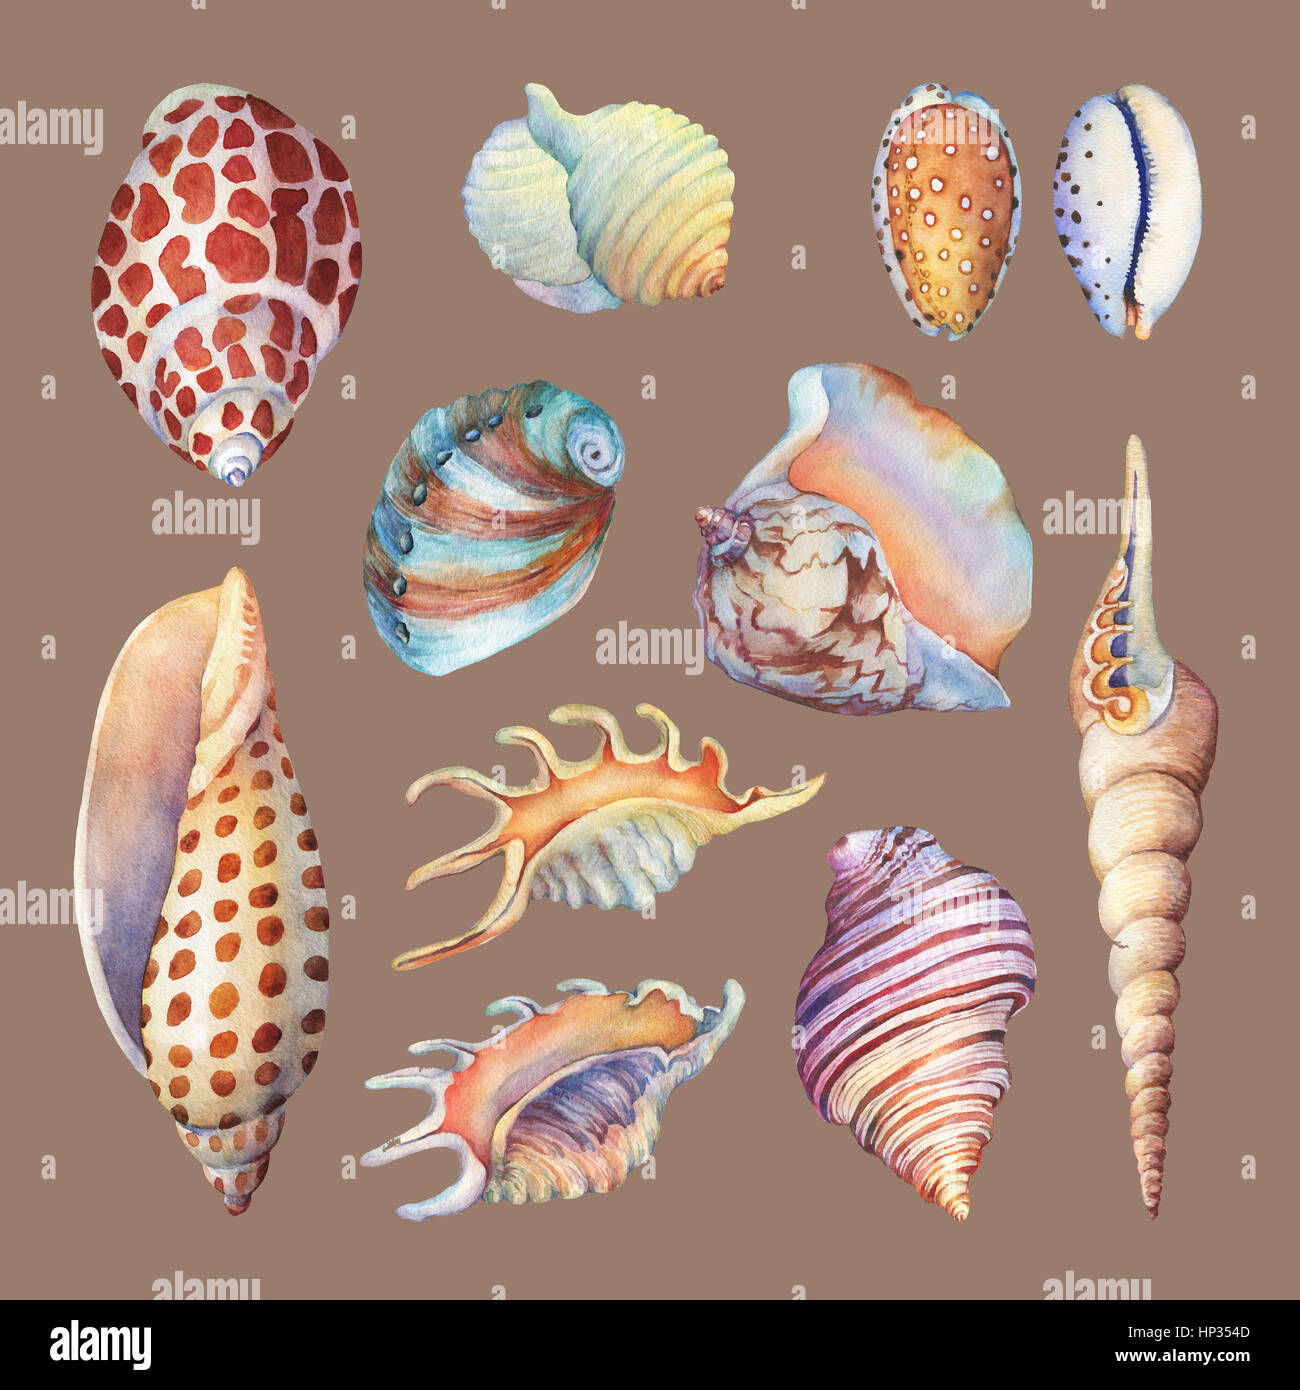 Conjunto de objetos de la vida submarina - ilustraciones de varias conchas tropicales y Starfish. Dibujadas a mano pintura acuarela sobre fondo marrón. Foto de stock